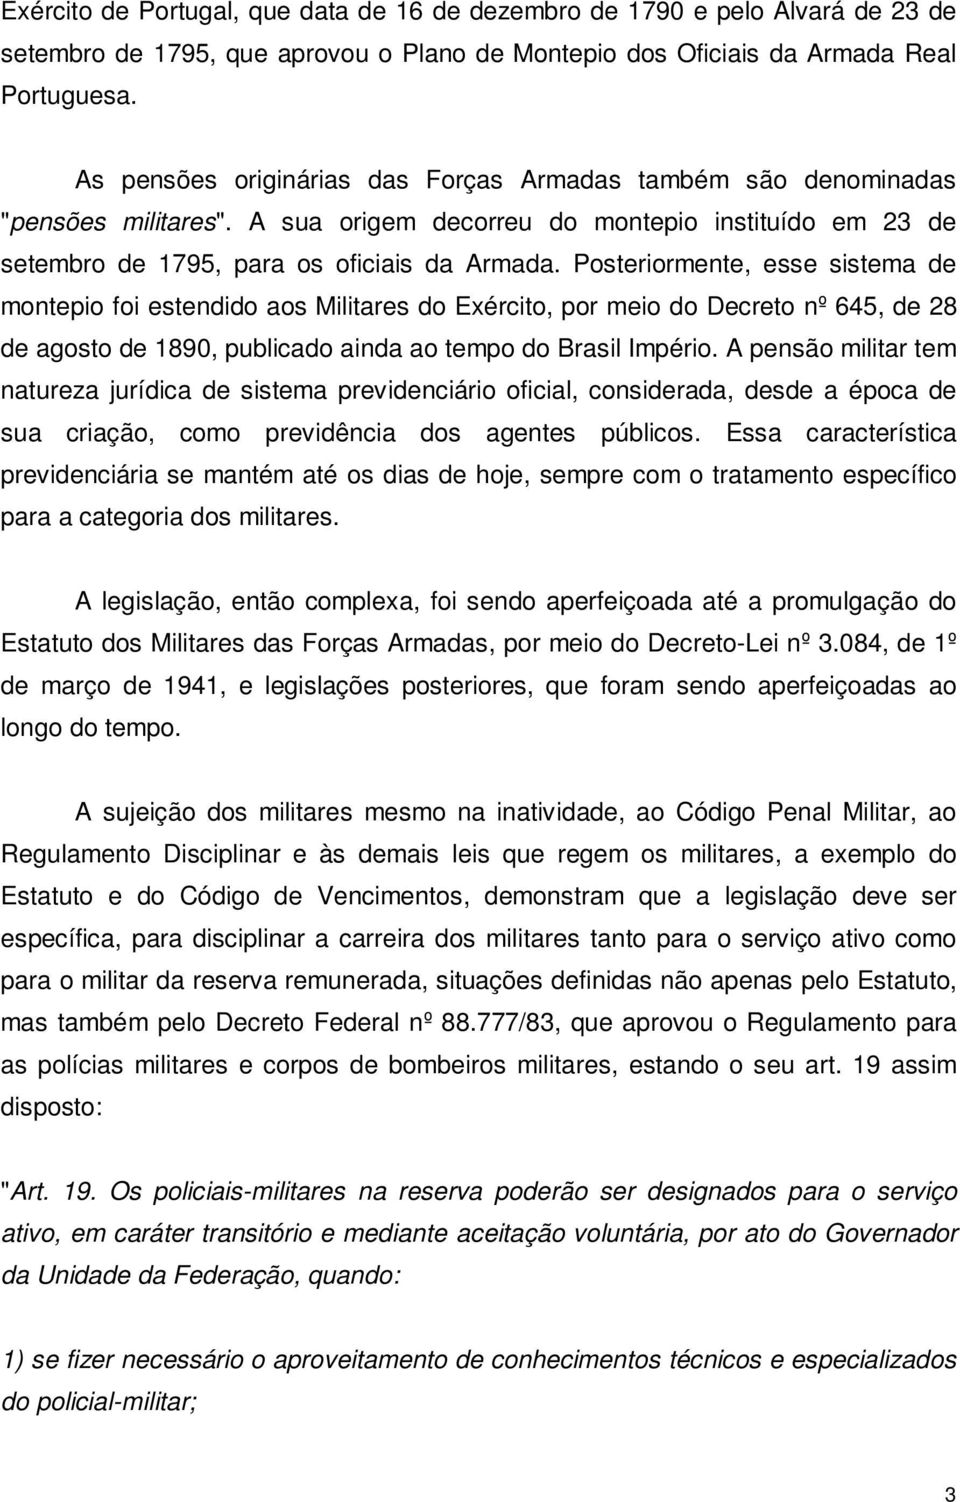 Posteriormente, esse sistema de montepio foi estendido aos Militares do Exército, por meio do Decreto nº 645, de 28 de agosto de 1890, publicado ainda ao tempo do Brasil Império.